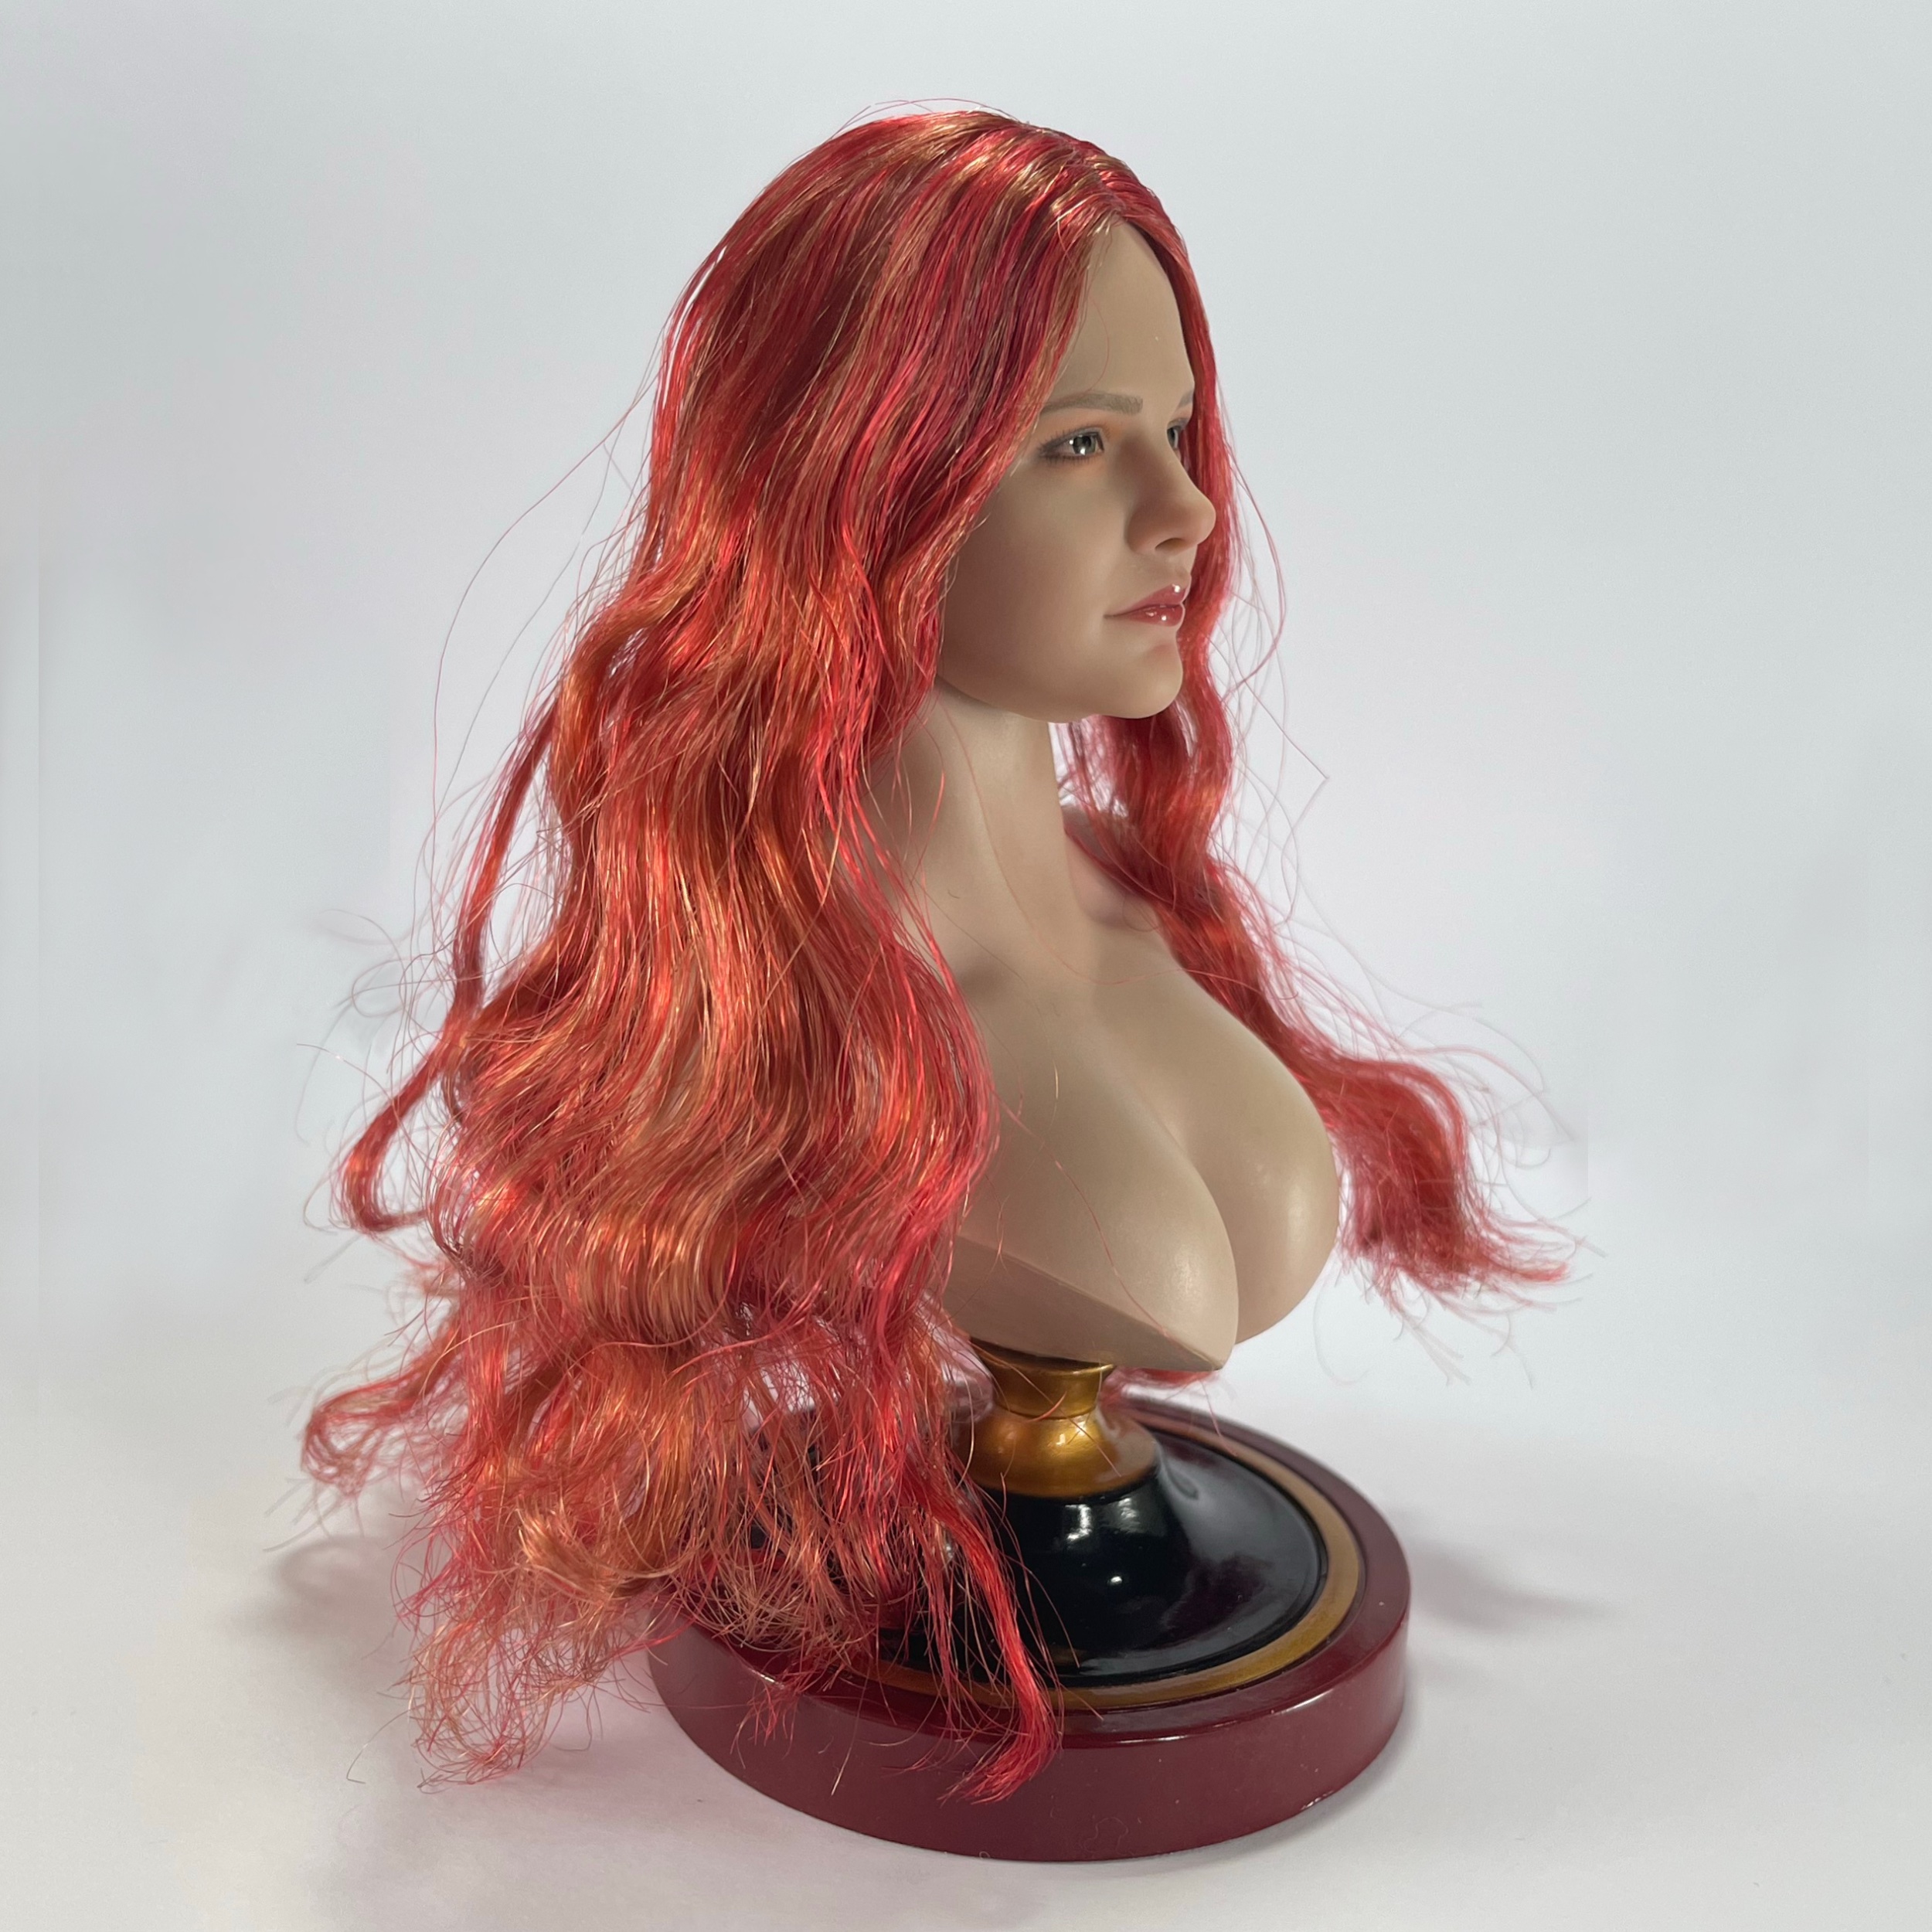 Female - NEW PRODUCT: SUPER DUCK SDH036 1/6 Scale Female head sculpt in 4 styles 52860114403_56650c0e42_o